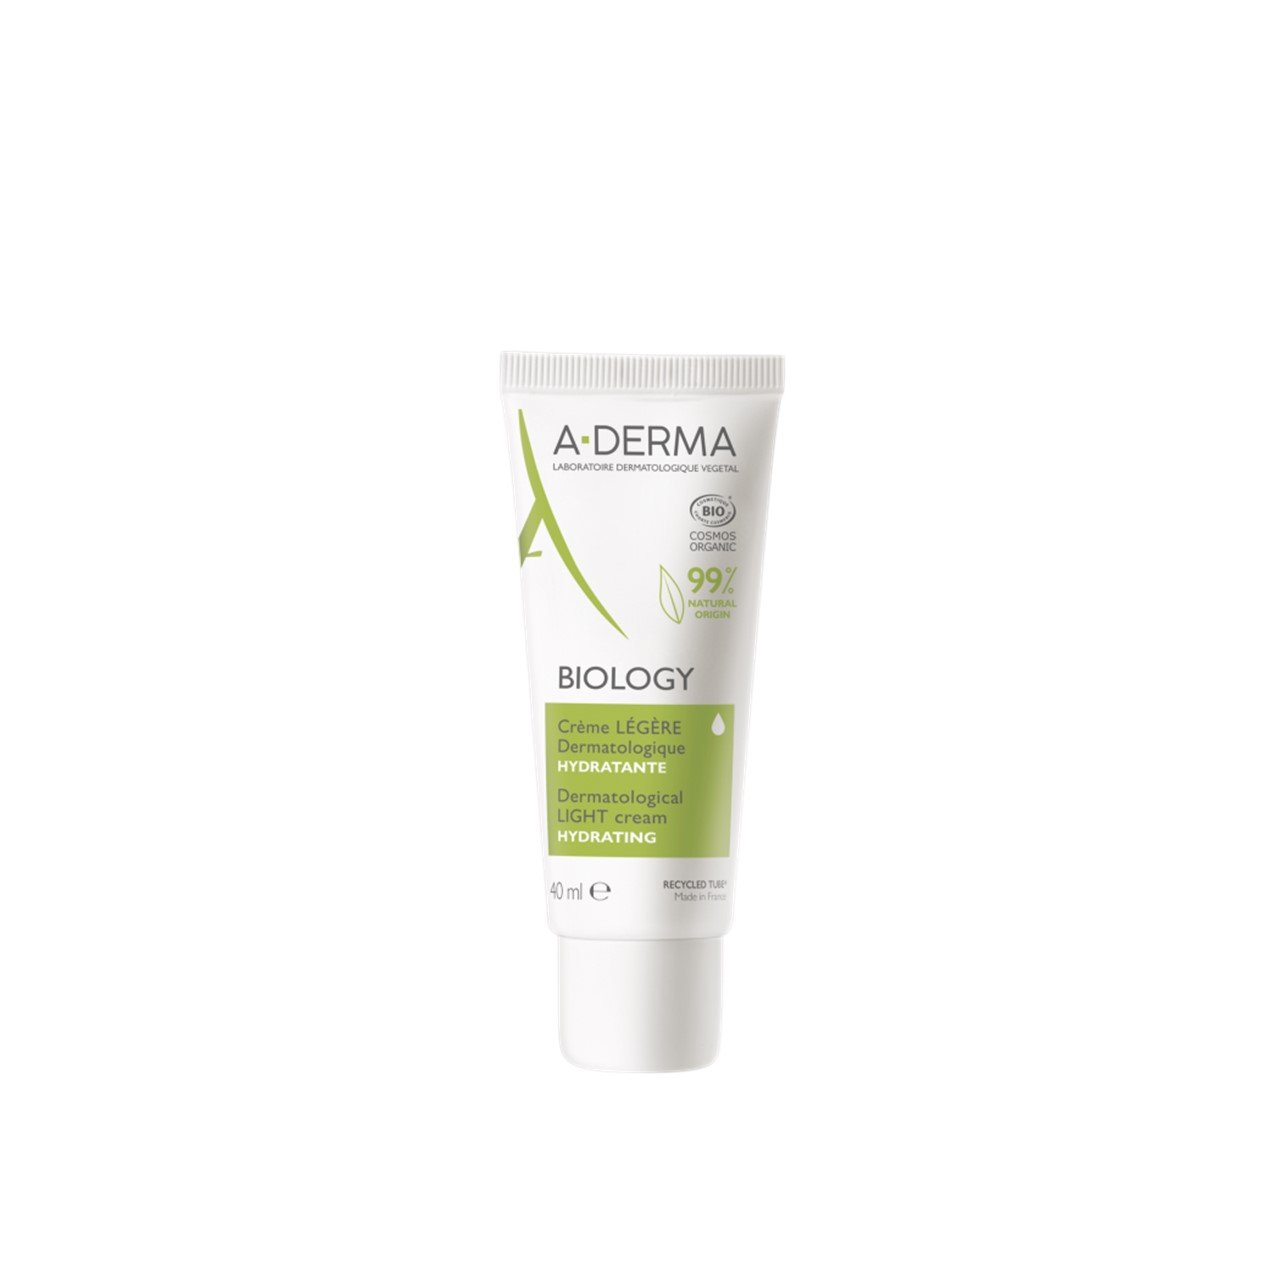 A-Derma Biology Hydrating Light Cream 40ml (1.35fl oz)